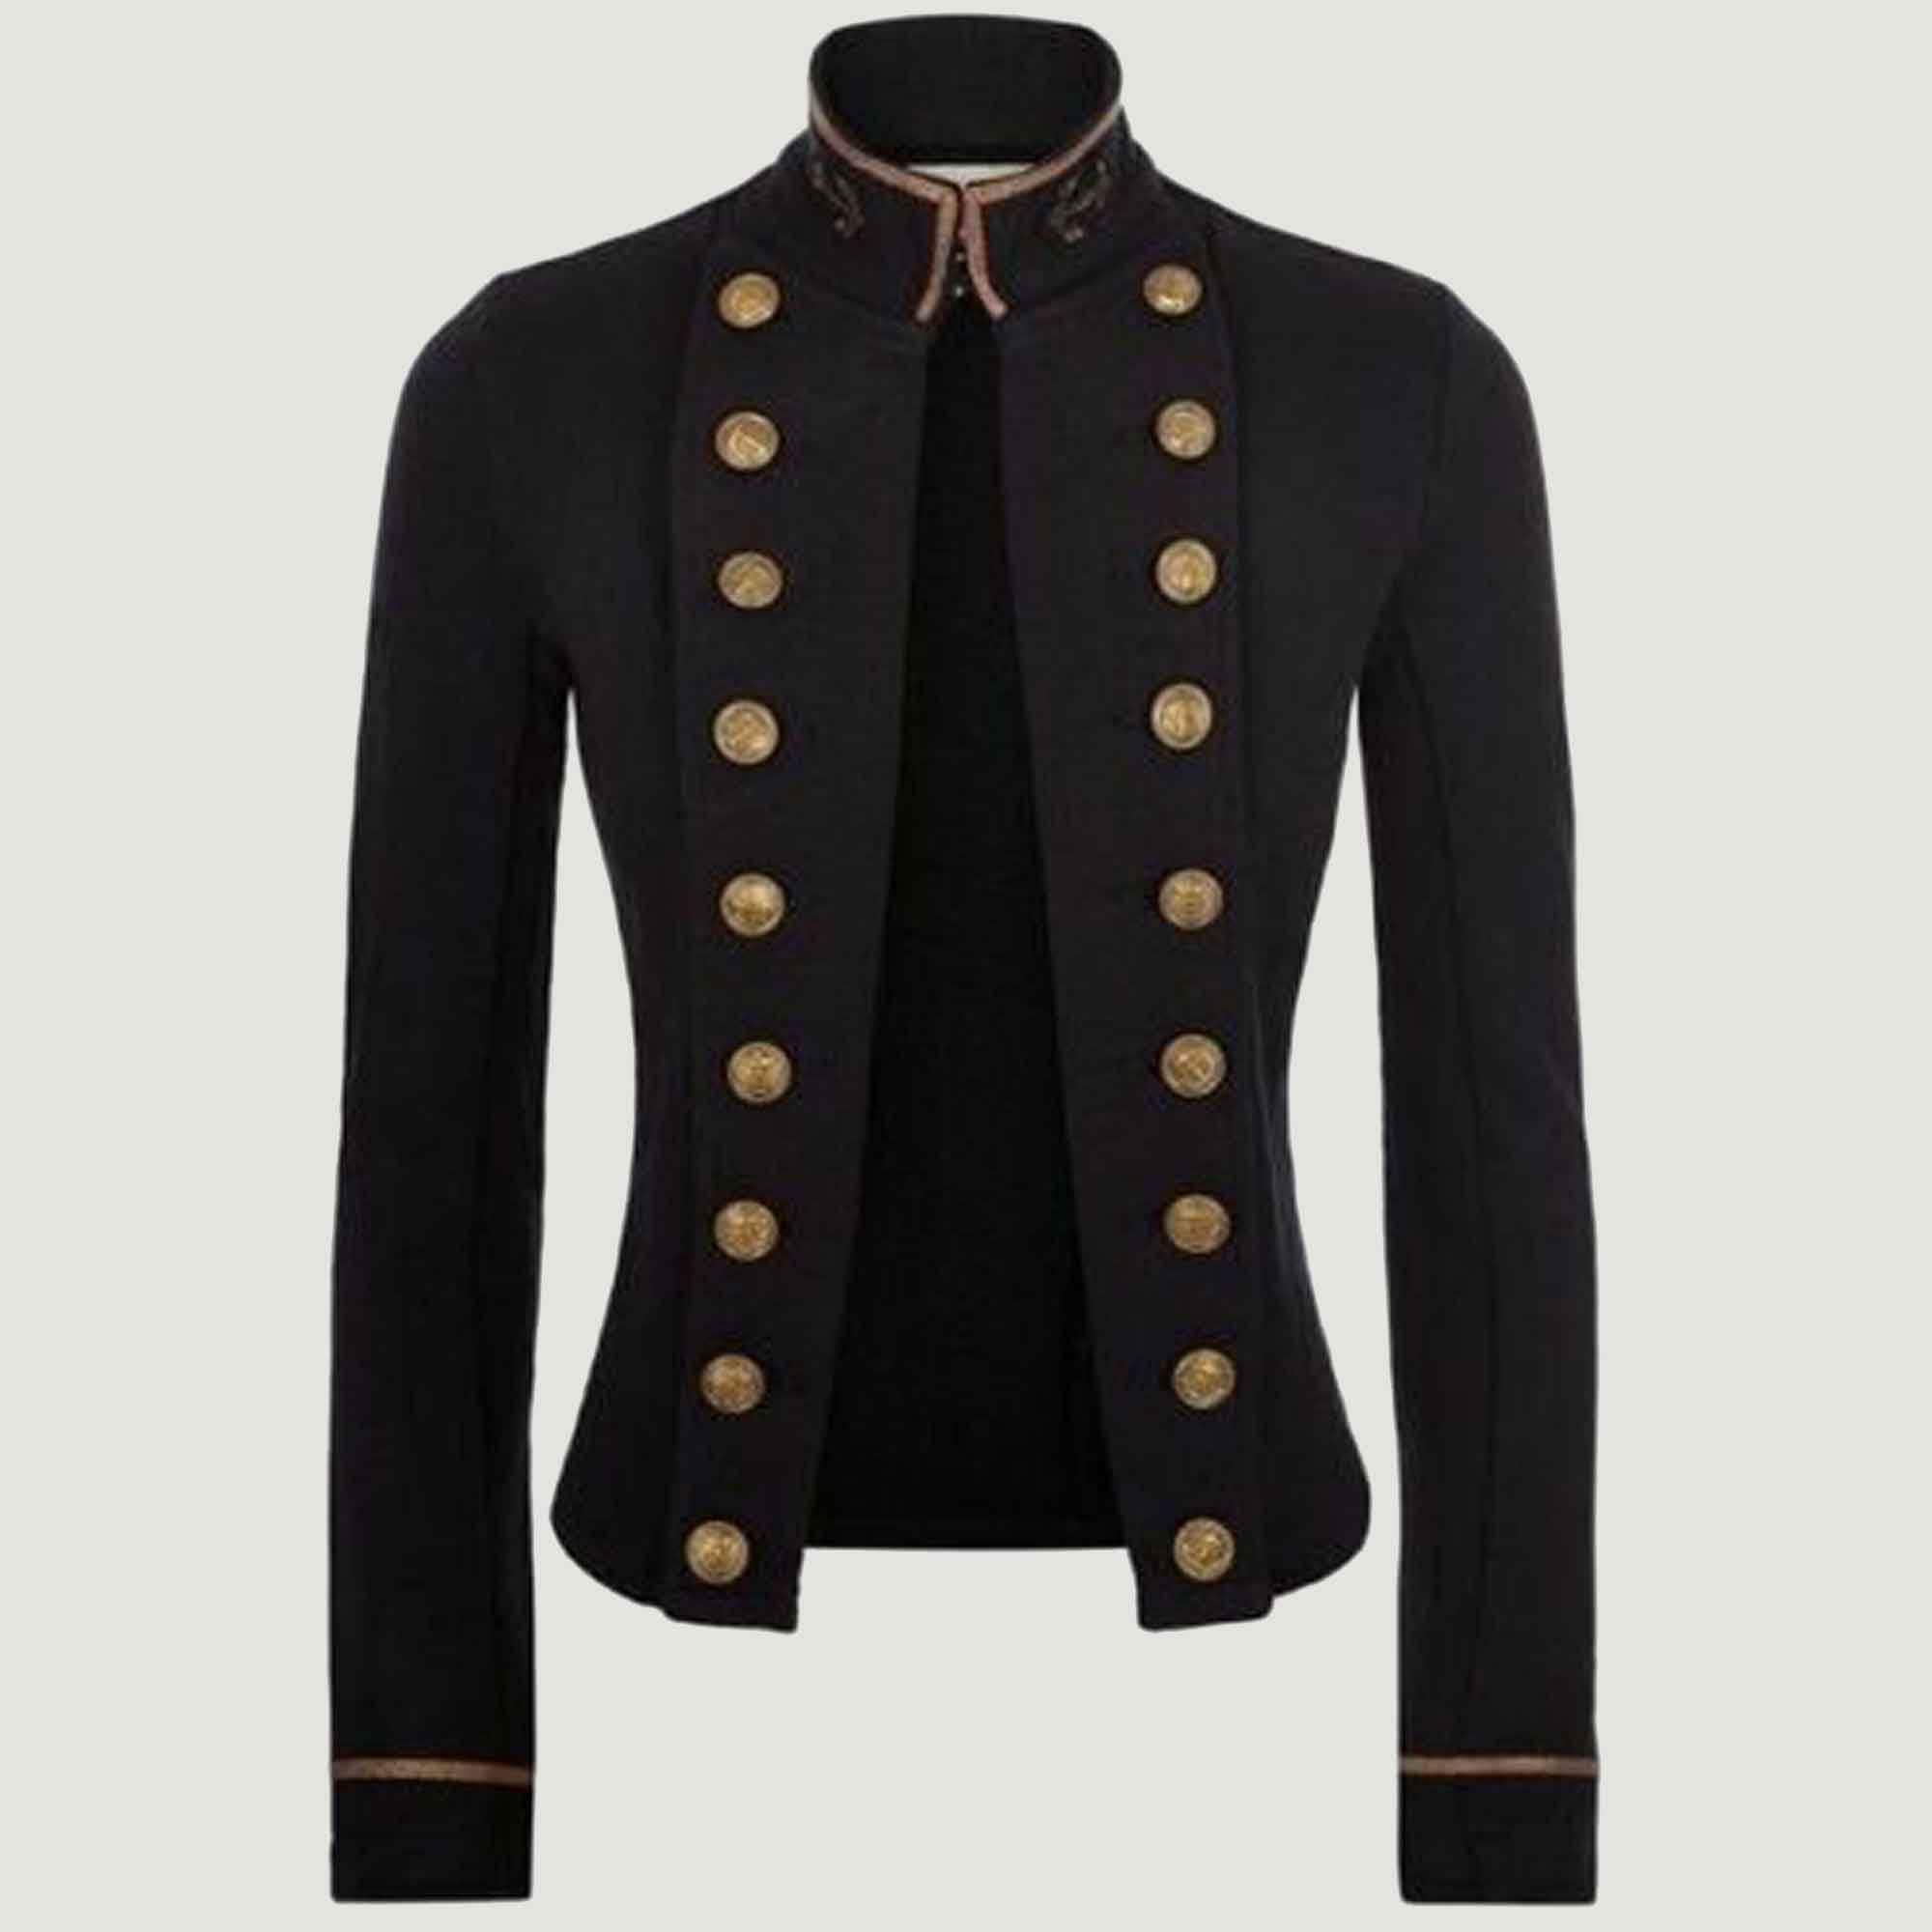 Ladies Black Officer's Military Coat Braided Jacketladies -  Denmark